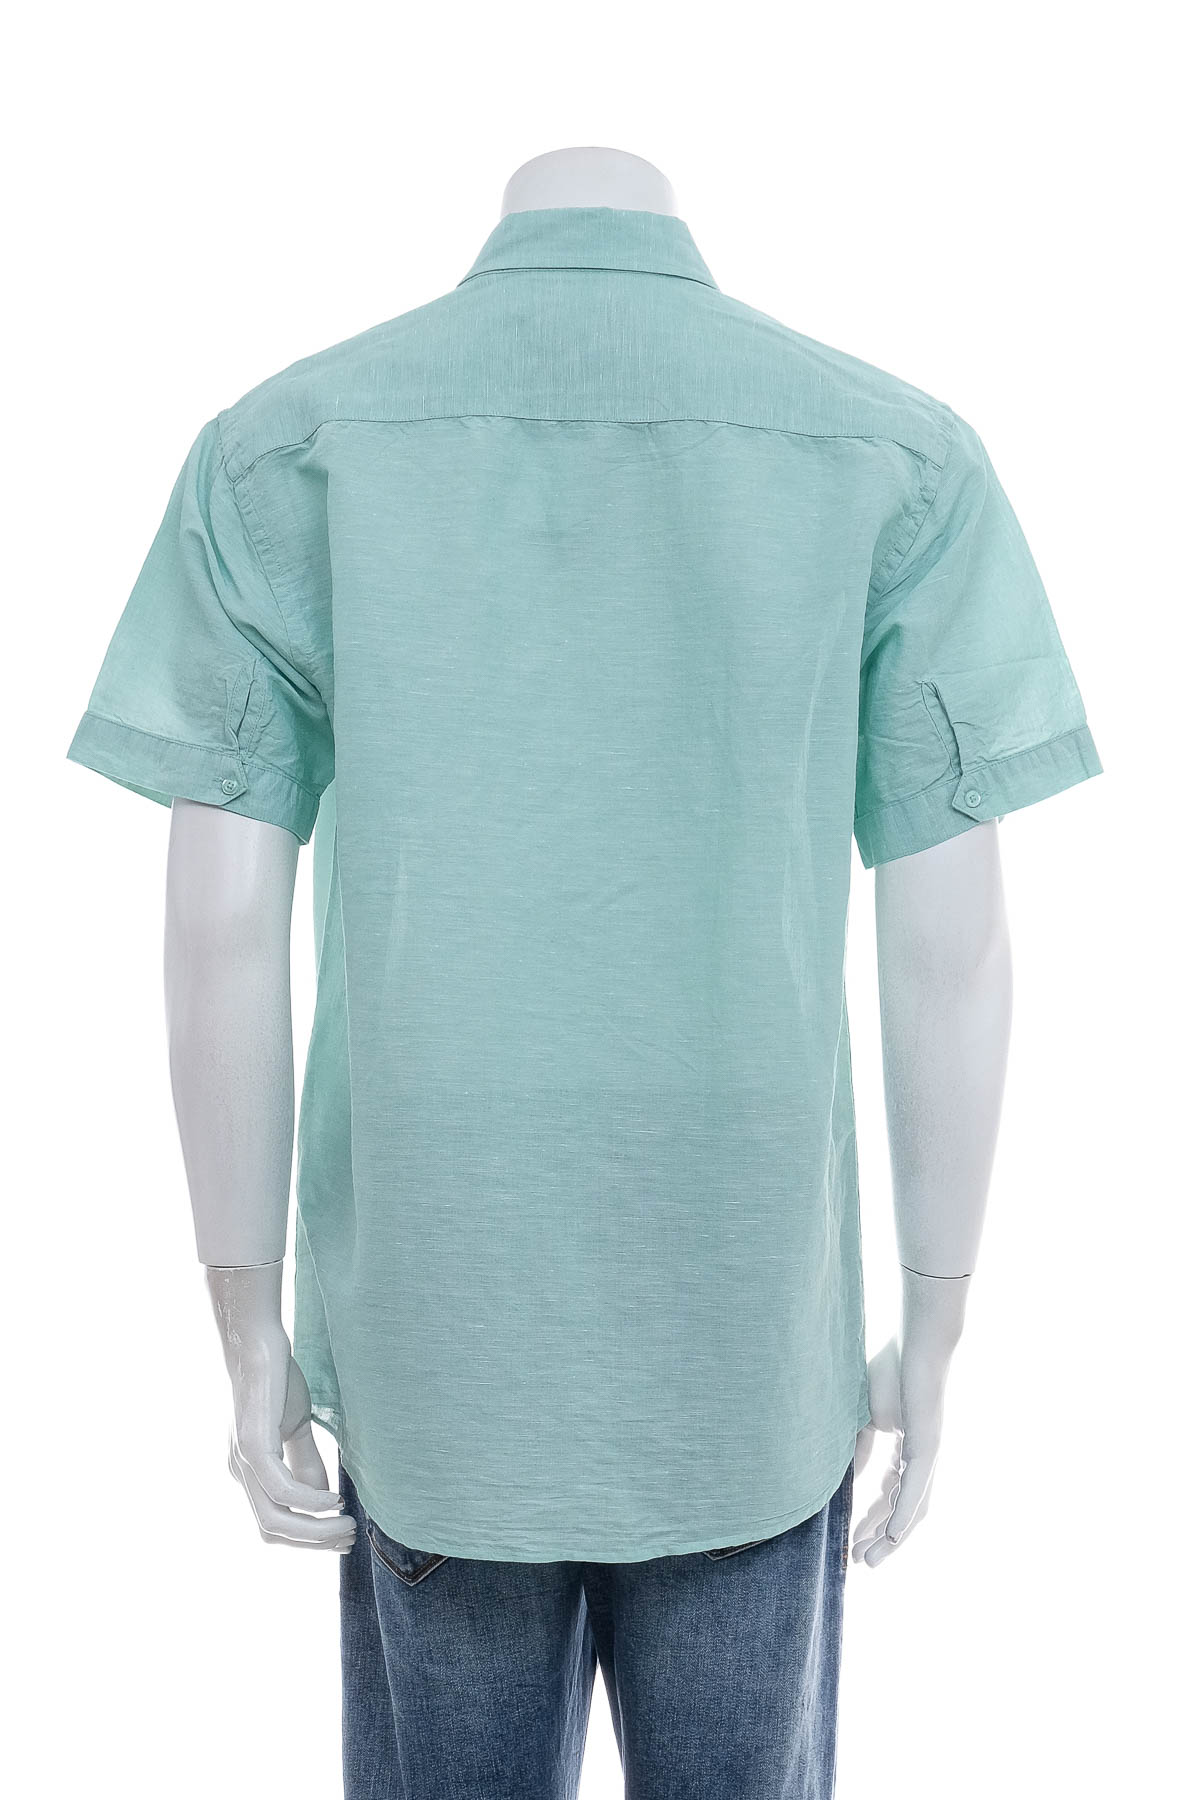 Ανδρικό πουκάμισο - FRANCO BETTONI - 1